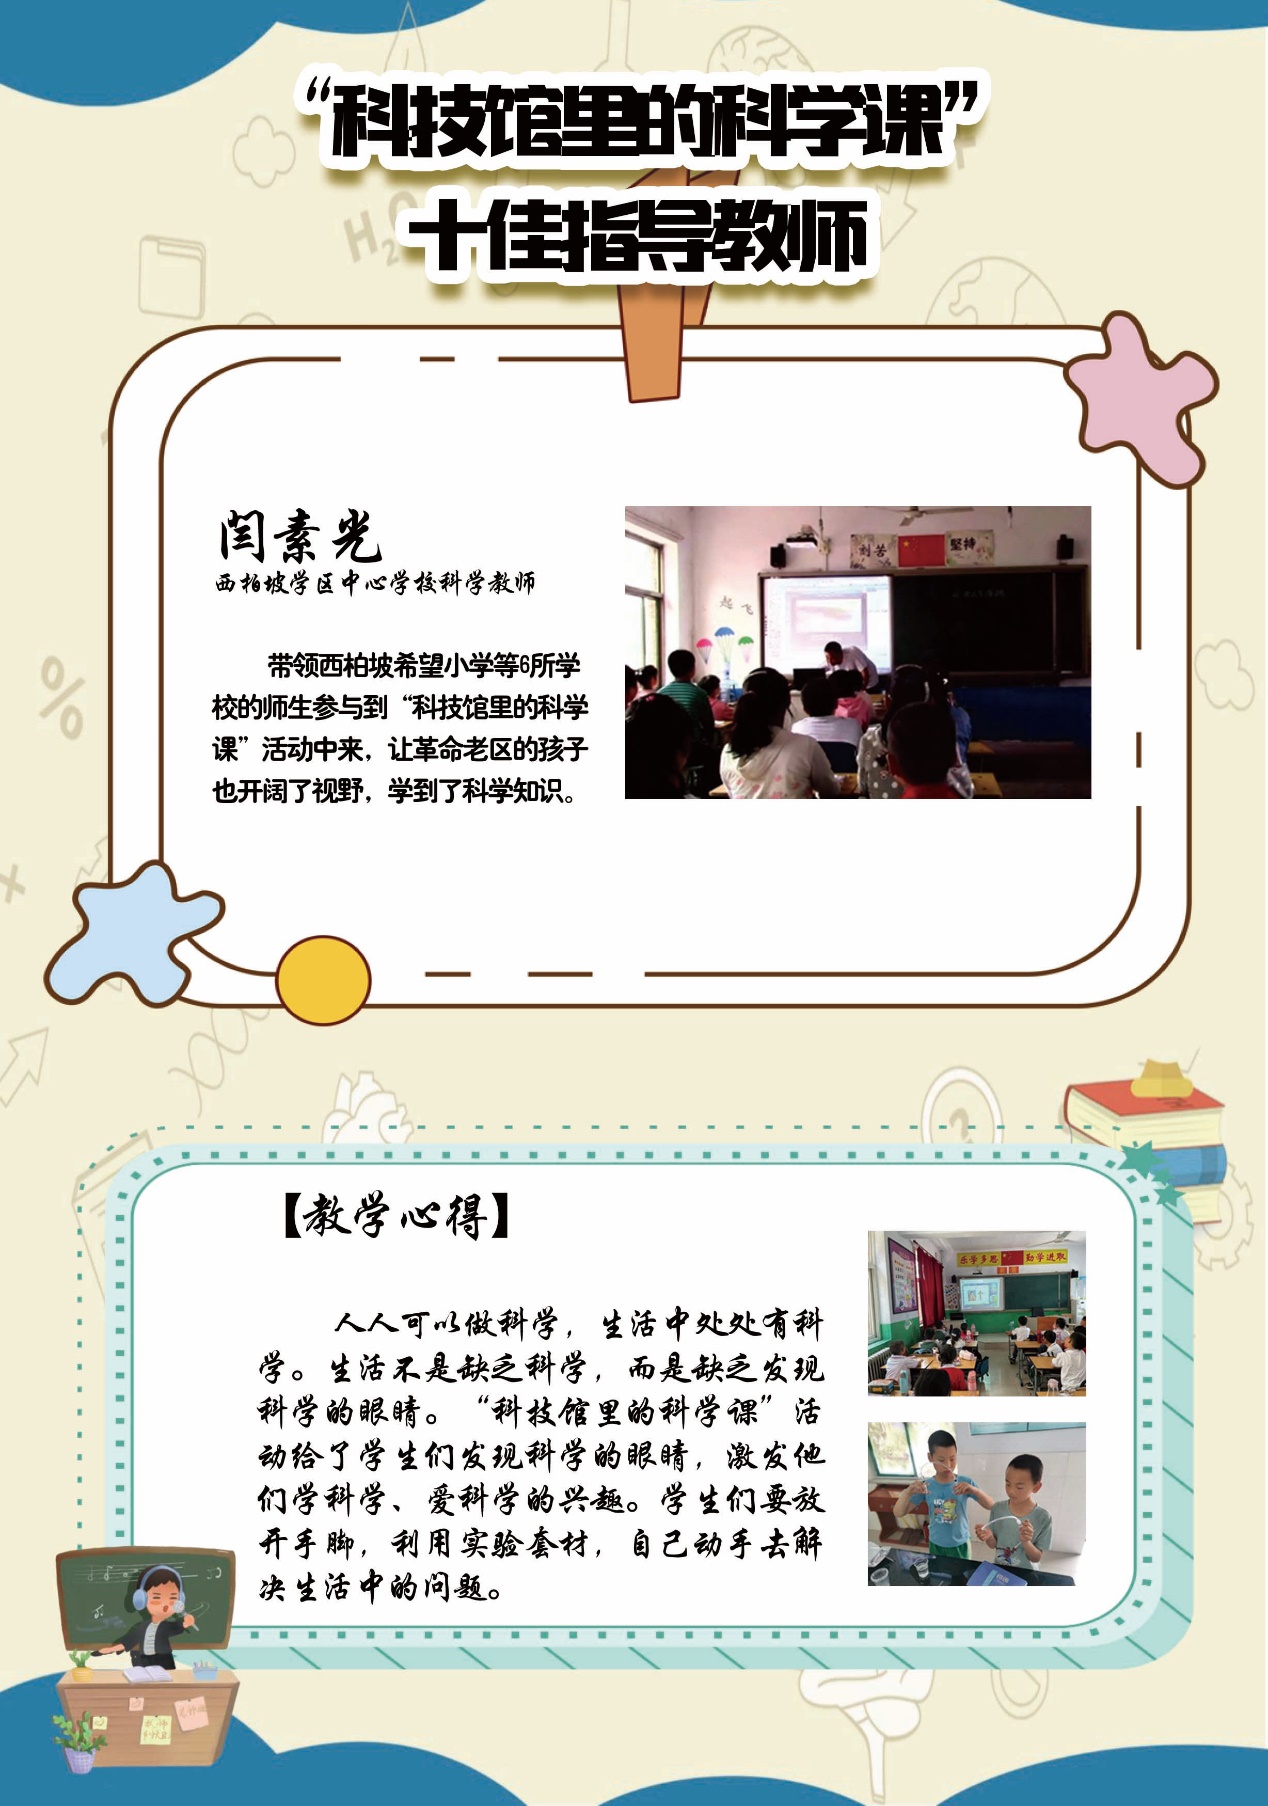 第37个教师节,科技馆里的科学课,十佳指导教师闫素光